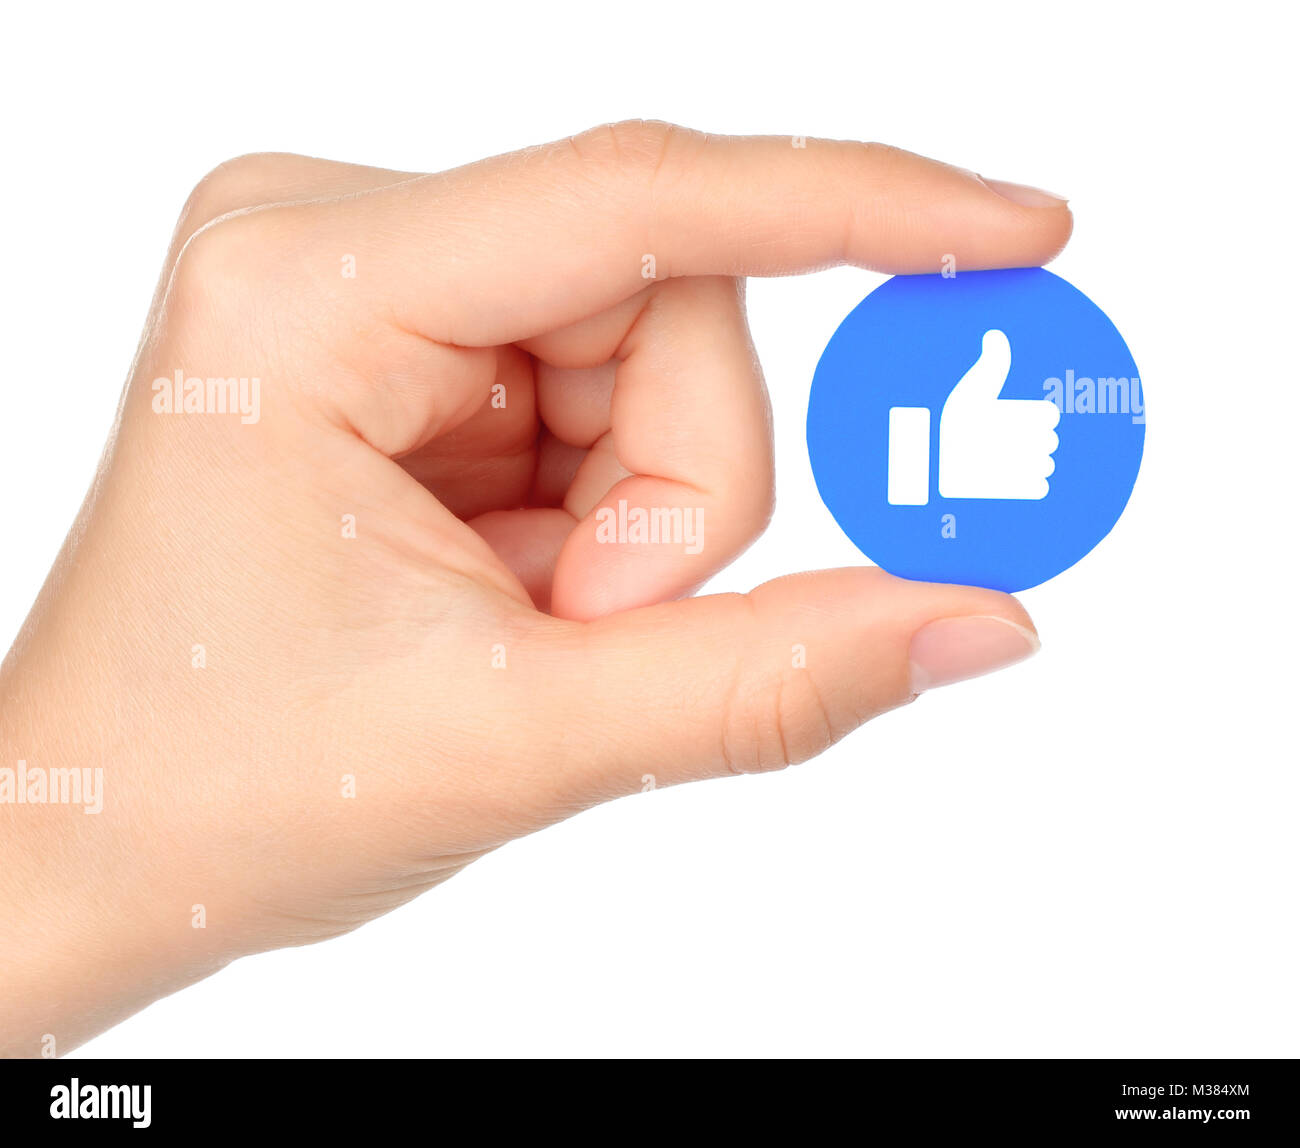 Kiew, Ukraine - September 04, 2017: Hand hält Facebook wie einfühlsame Emoji Reaktion, auf Papier gedruckt. Facebook ist ein bekannter social networking s Stockfoto